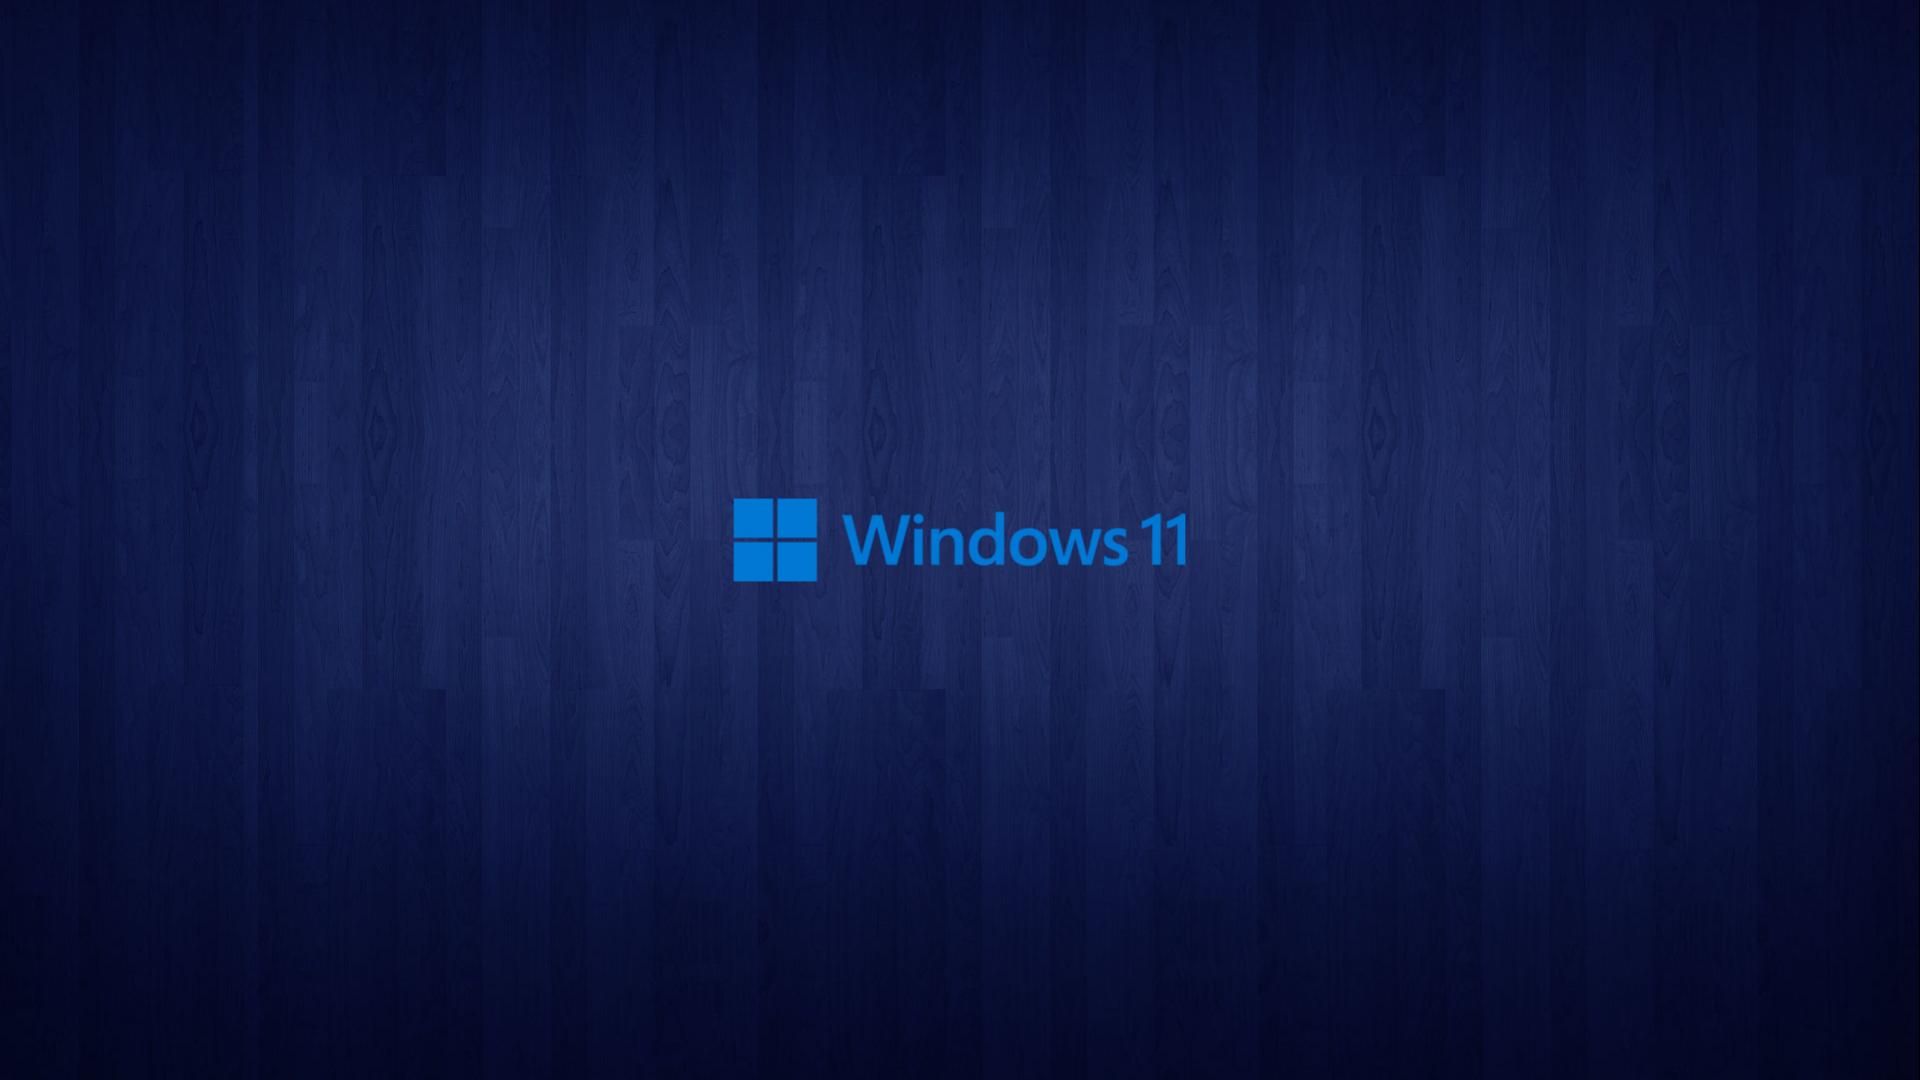 Обои Windows 11 se